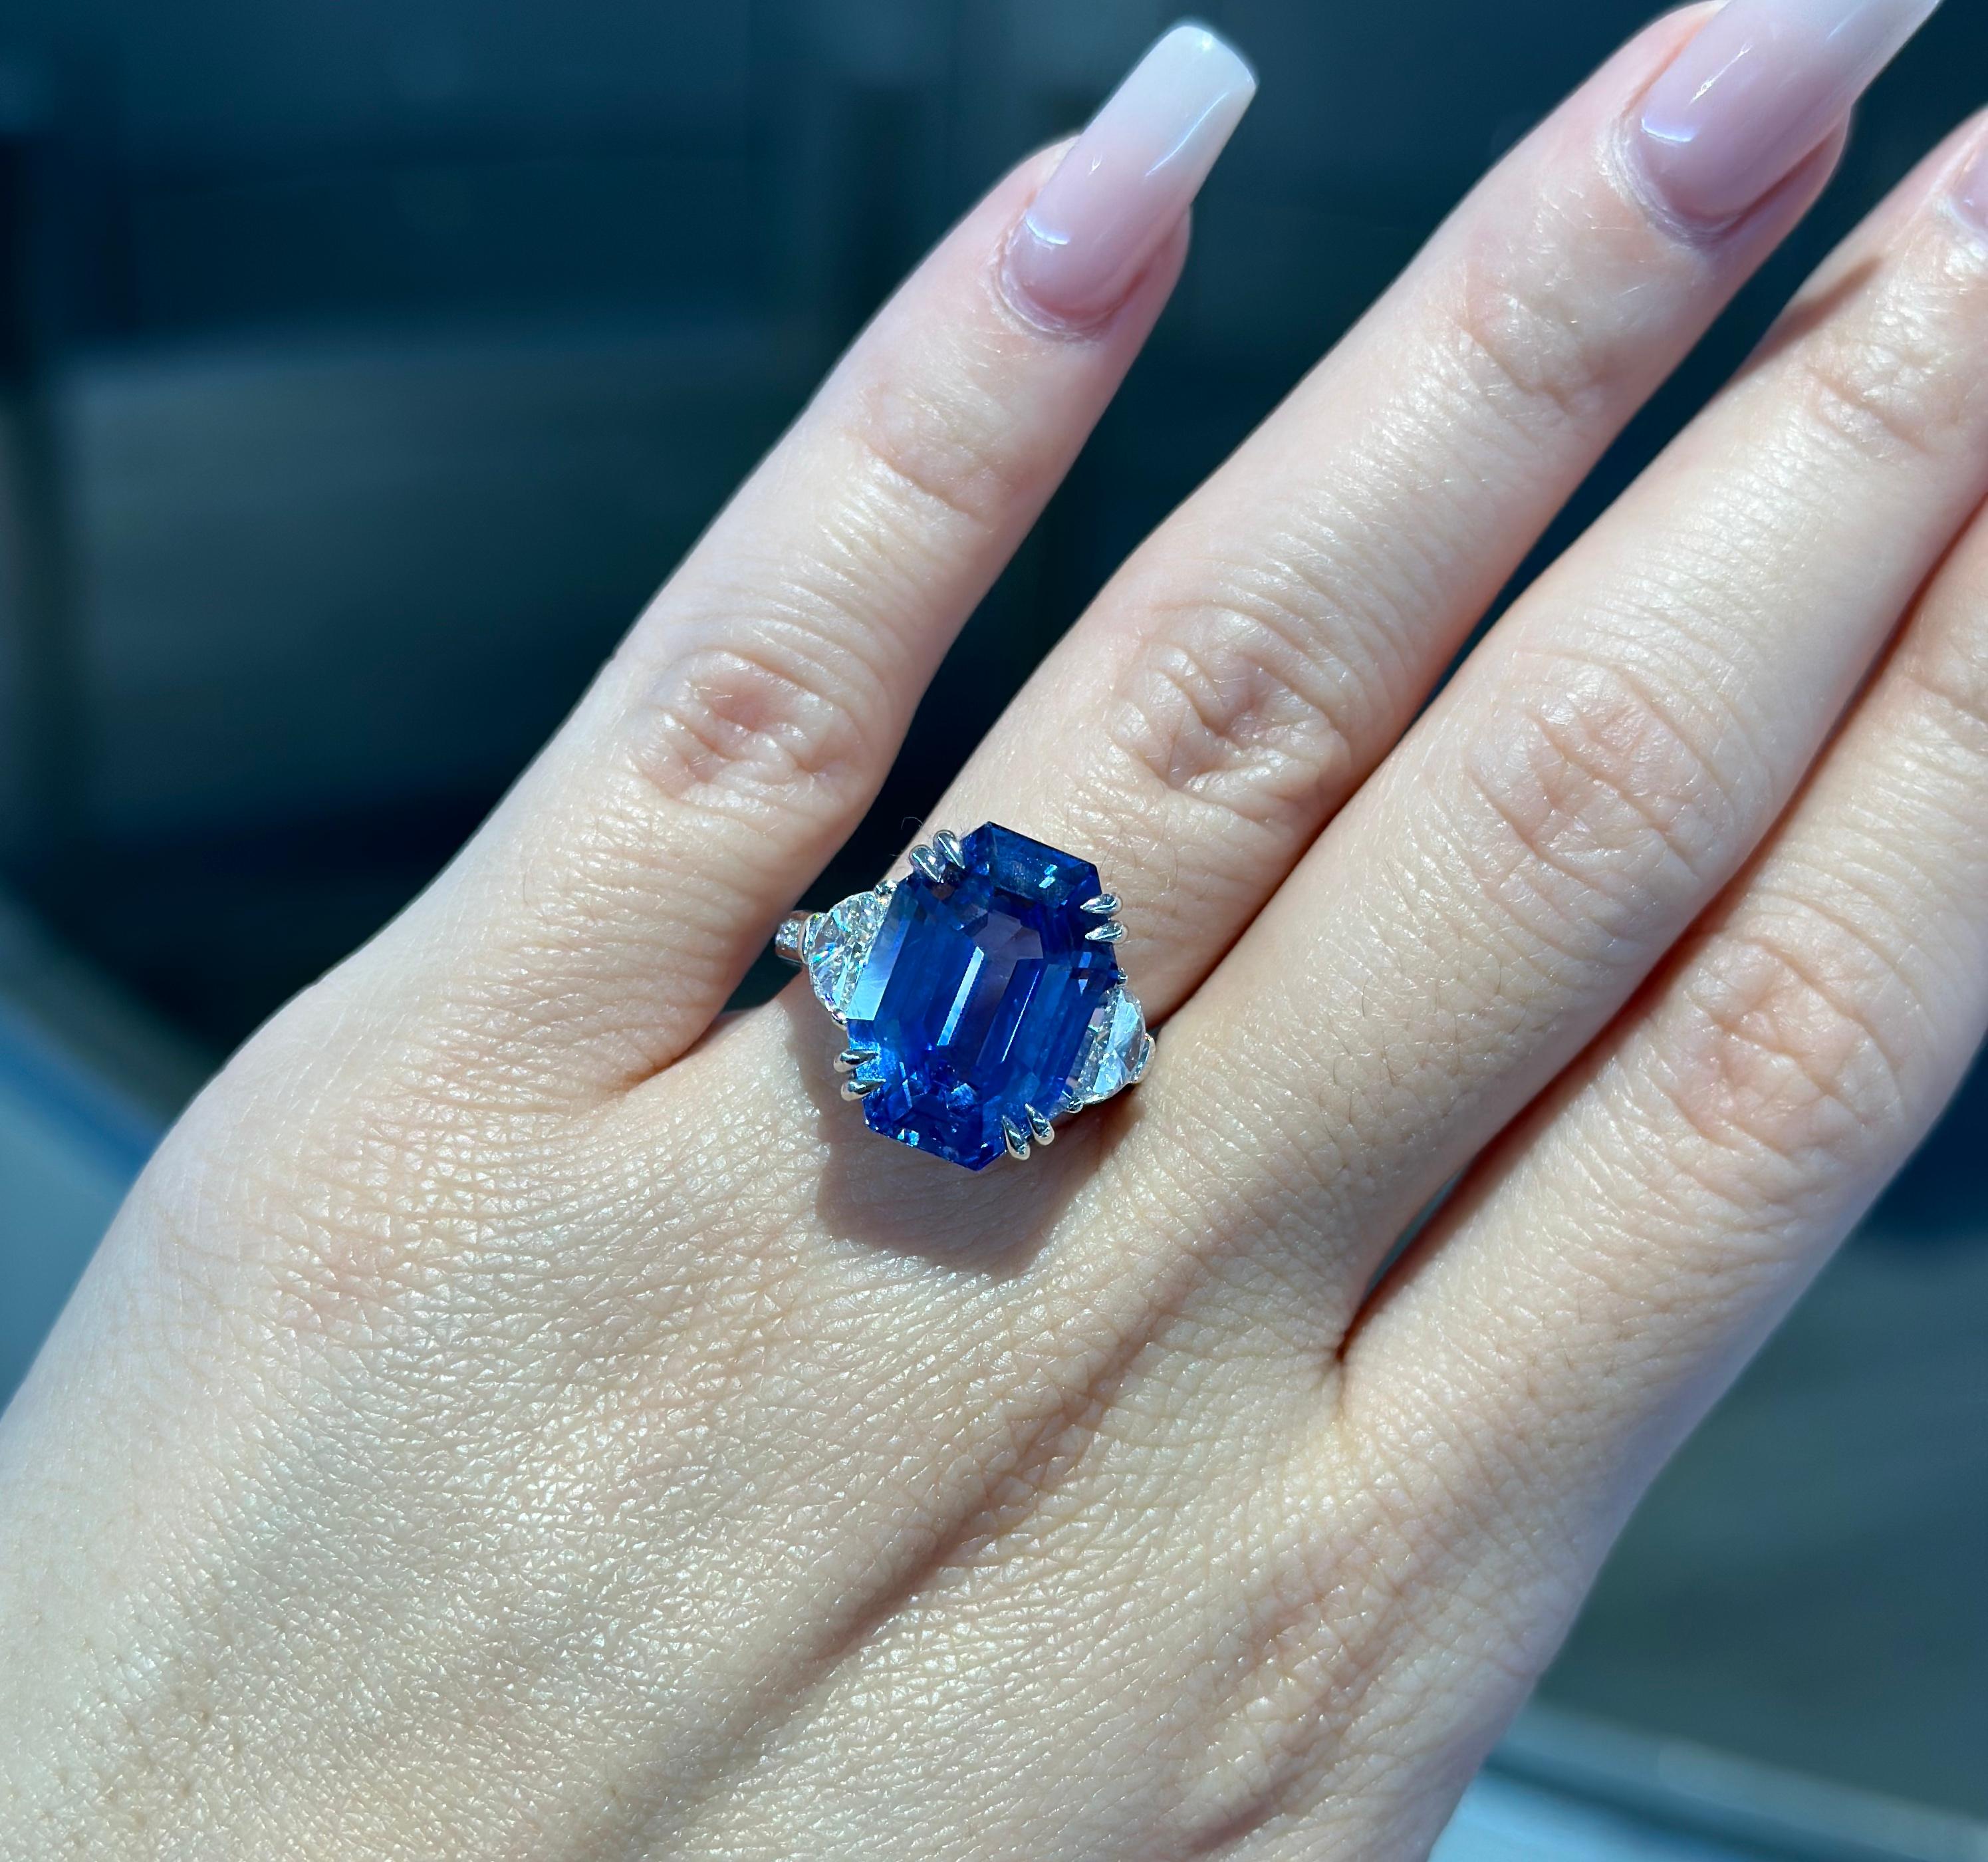 Heben Sie sich mit diesem atemberaubenden 14,58 Karat No Heat Ring mit natürlichem Saphir und Diamant in 18 Karat Weißgold ab.

Sri Lanka Ceylon ist bekannt für seine außergewöhnlichen lupenreinen Saphire mit königsblauer Farbe.

Dieser Ring